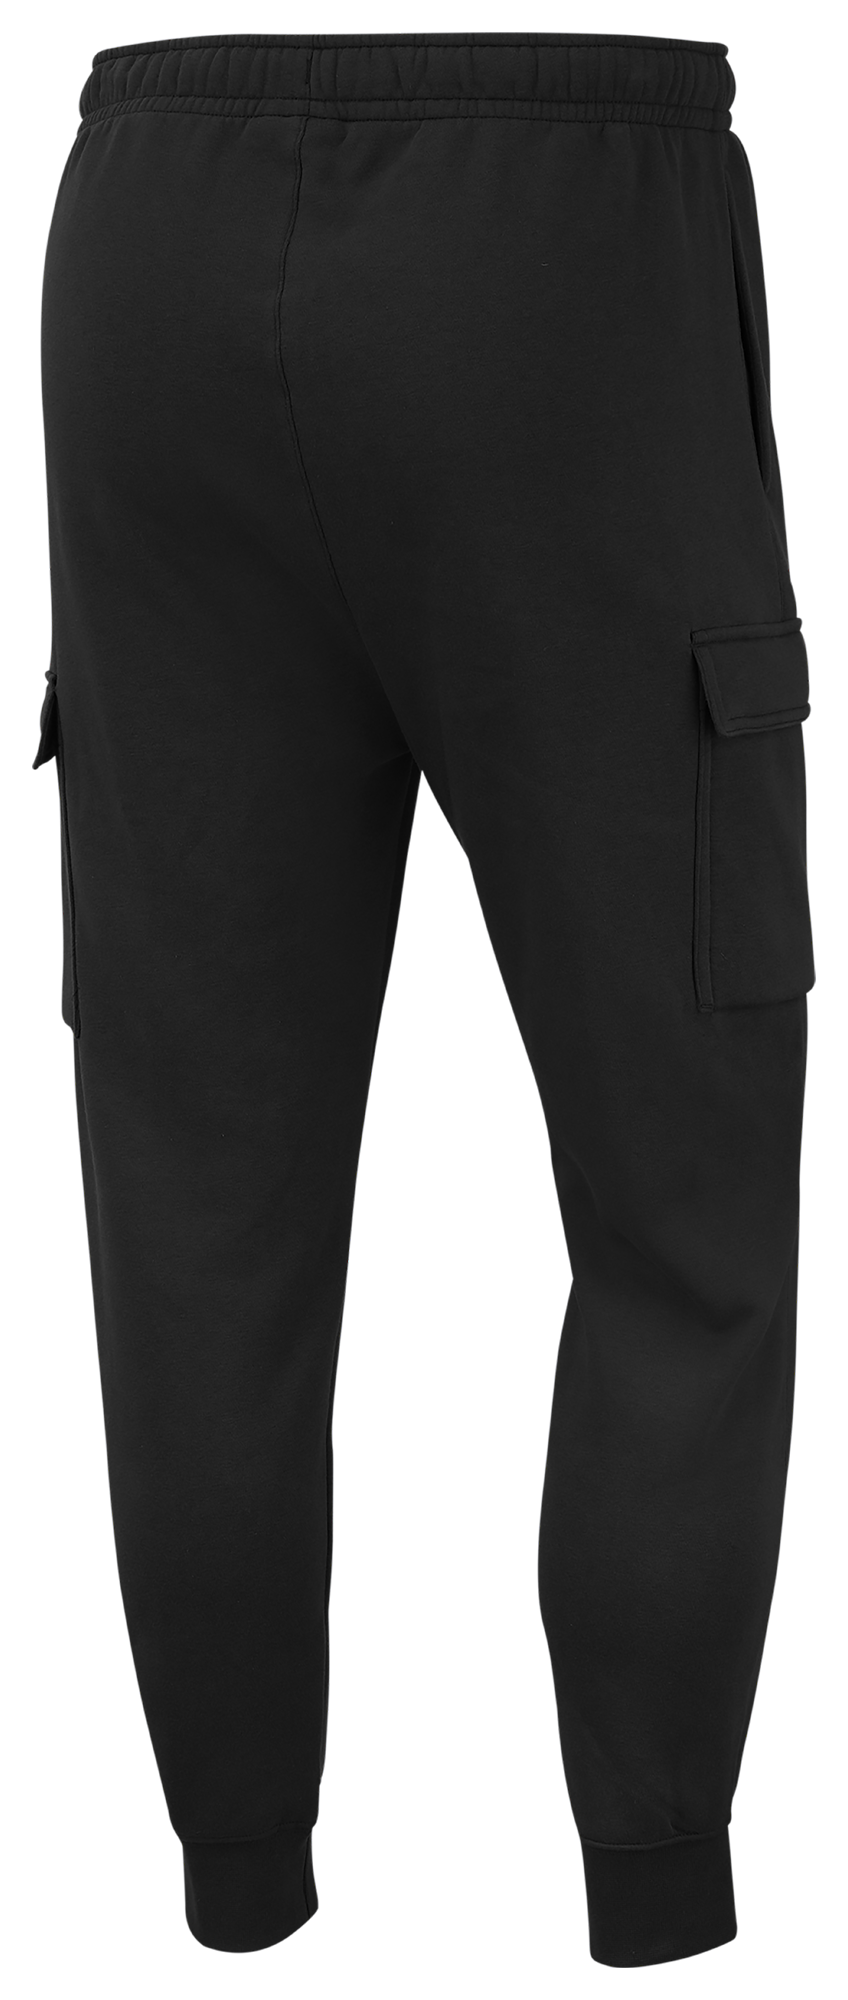 Nike Men's Sportswear Club Fleece Cargo Trousers Grey CD3129 063 - Sam Tabak